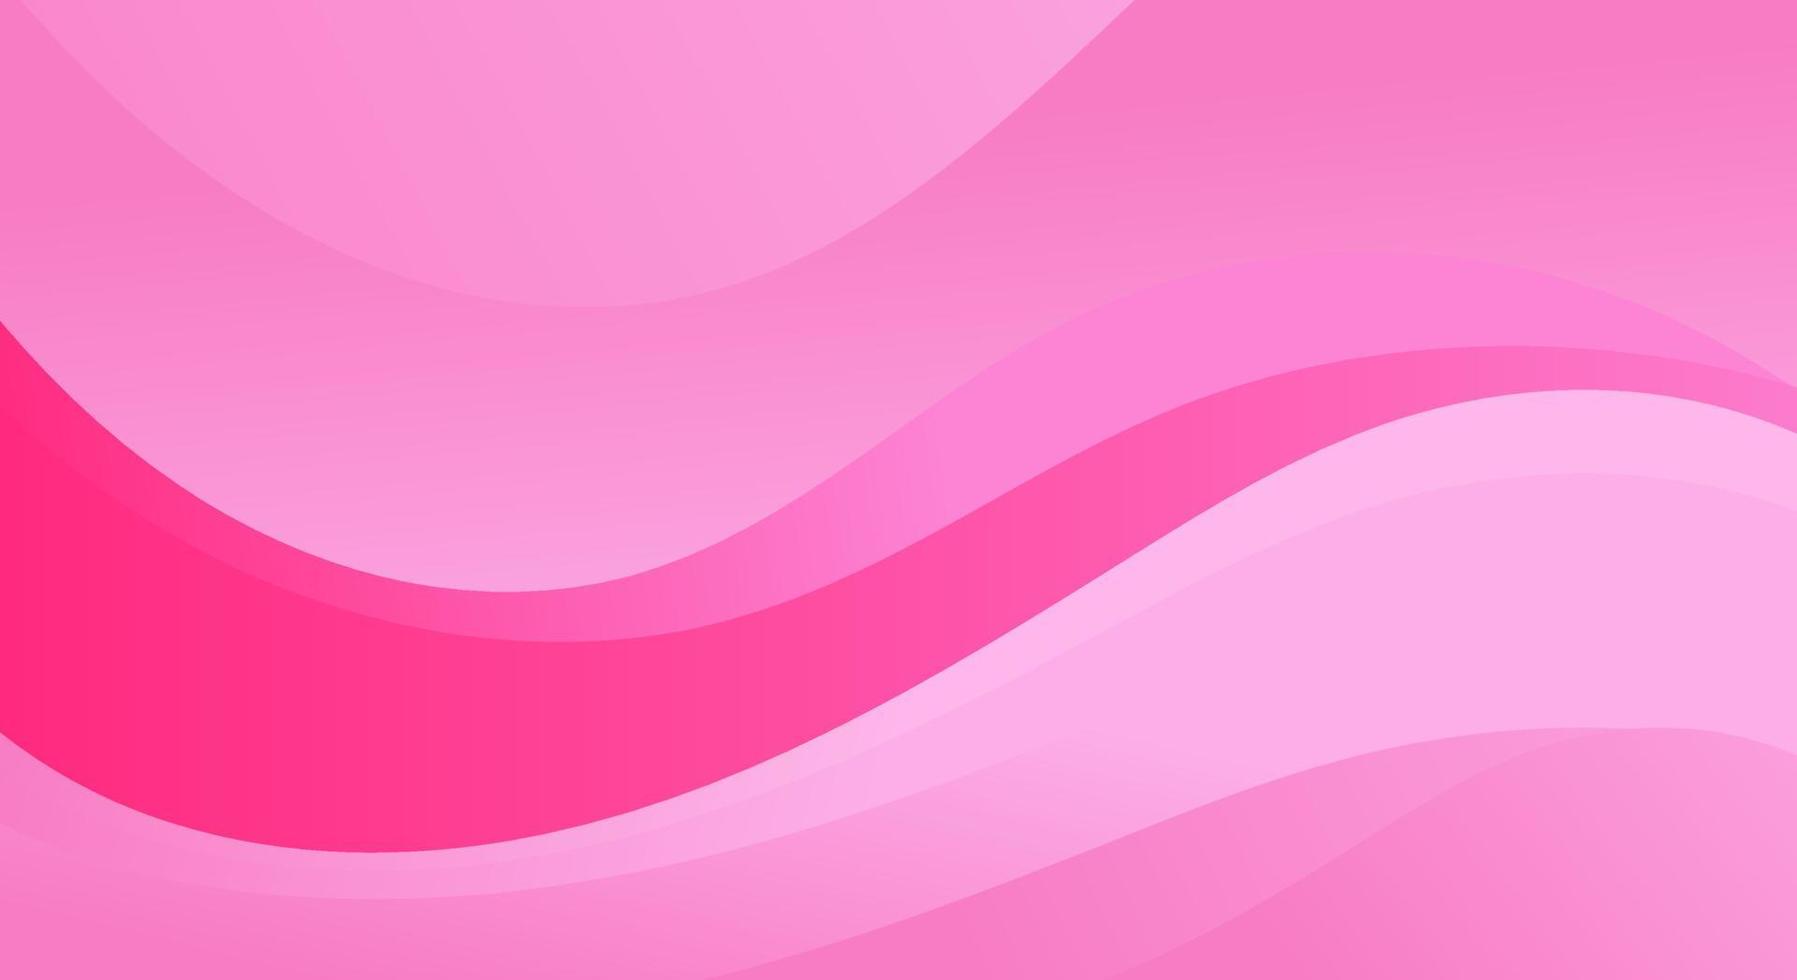 Elegant wave pink banner background vector